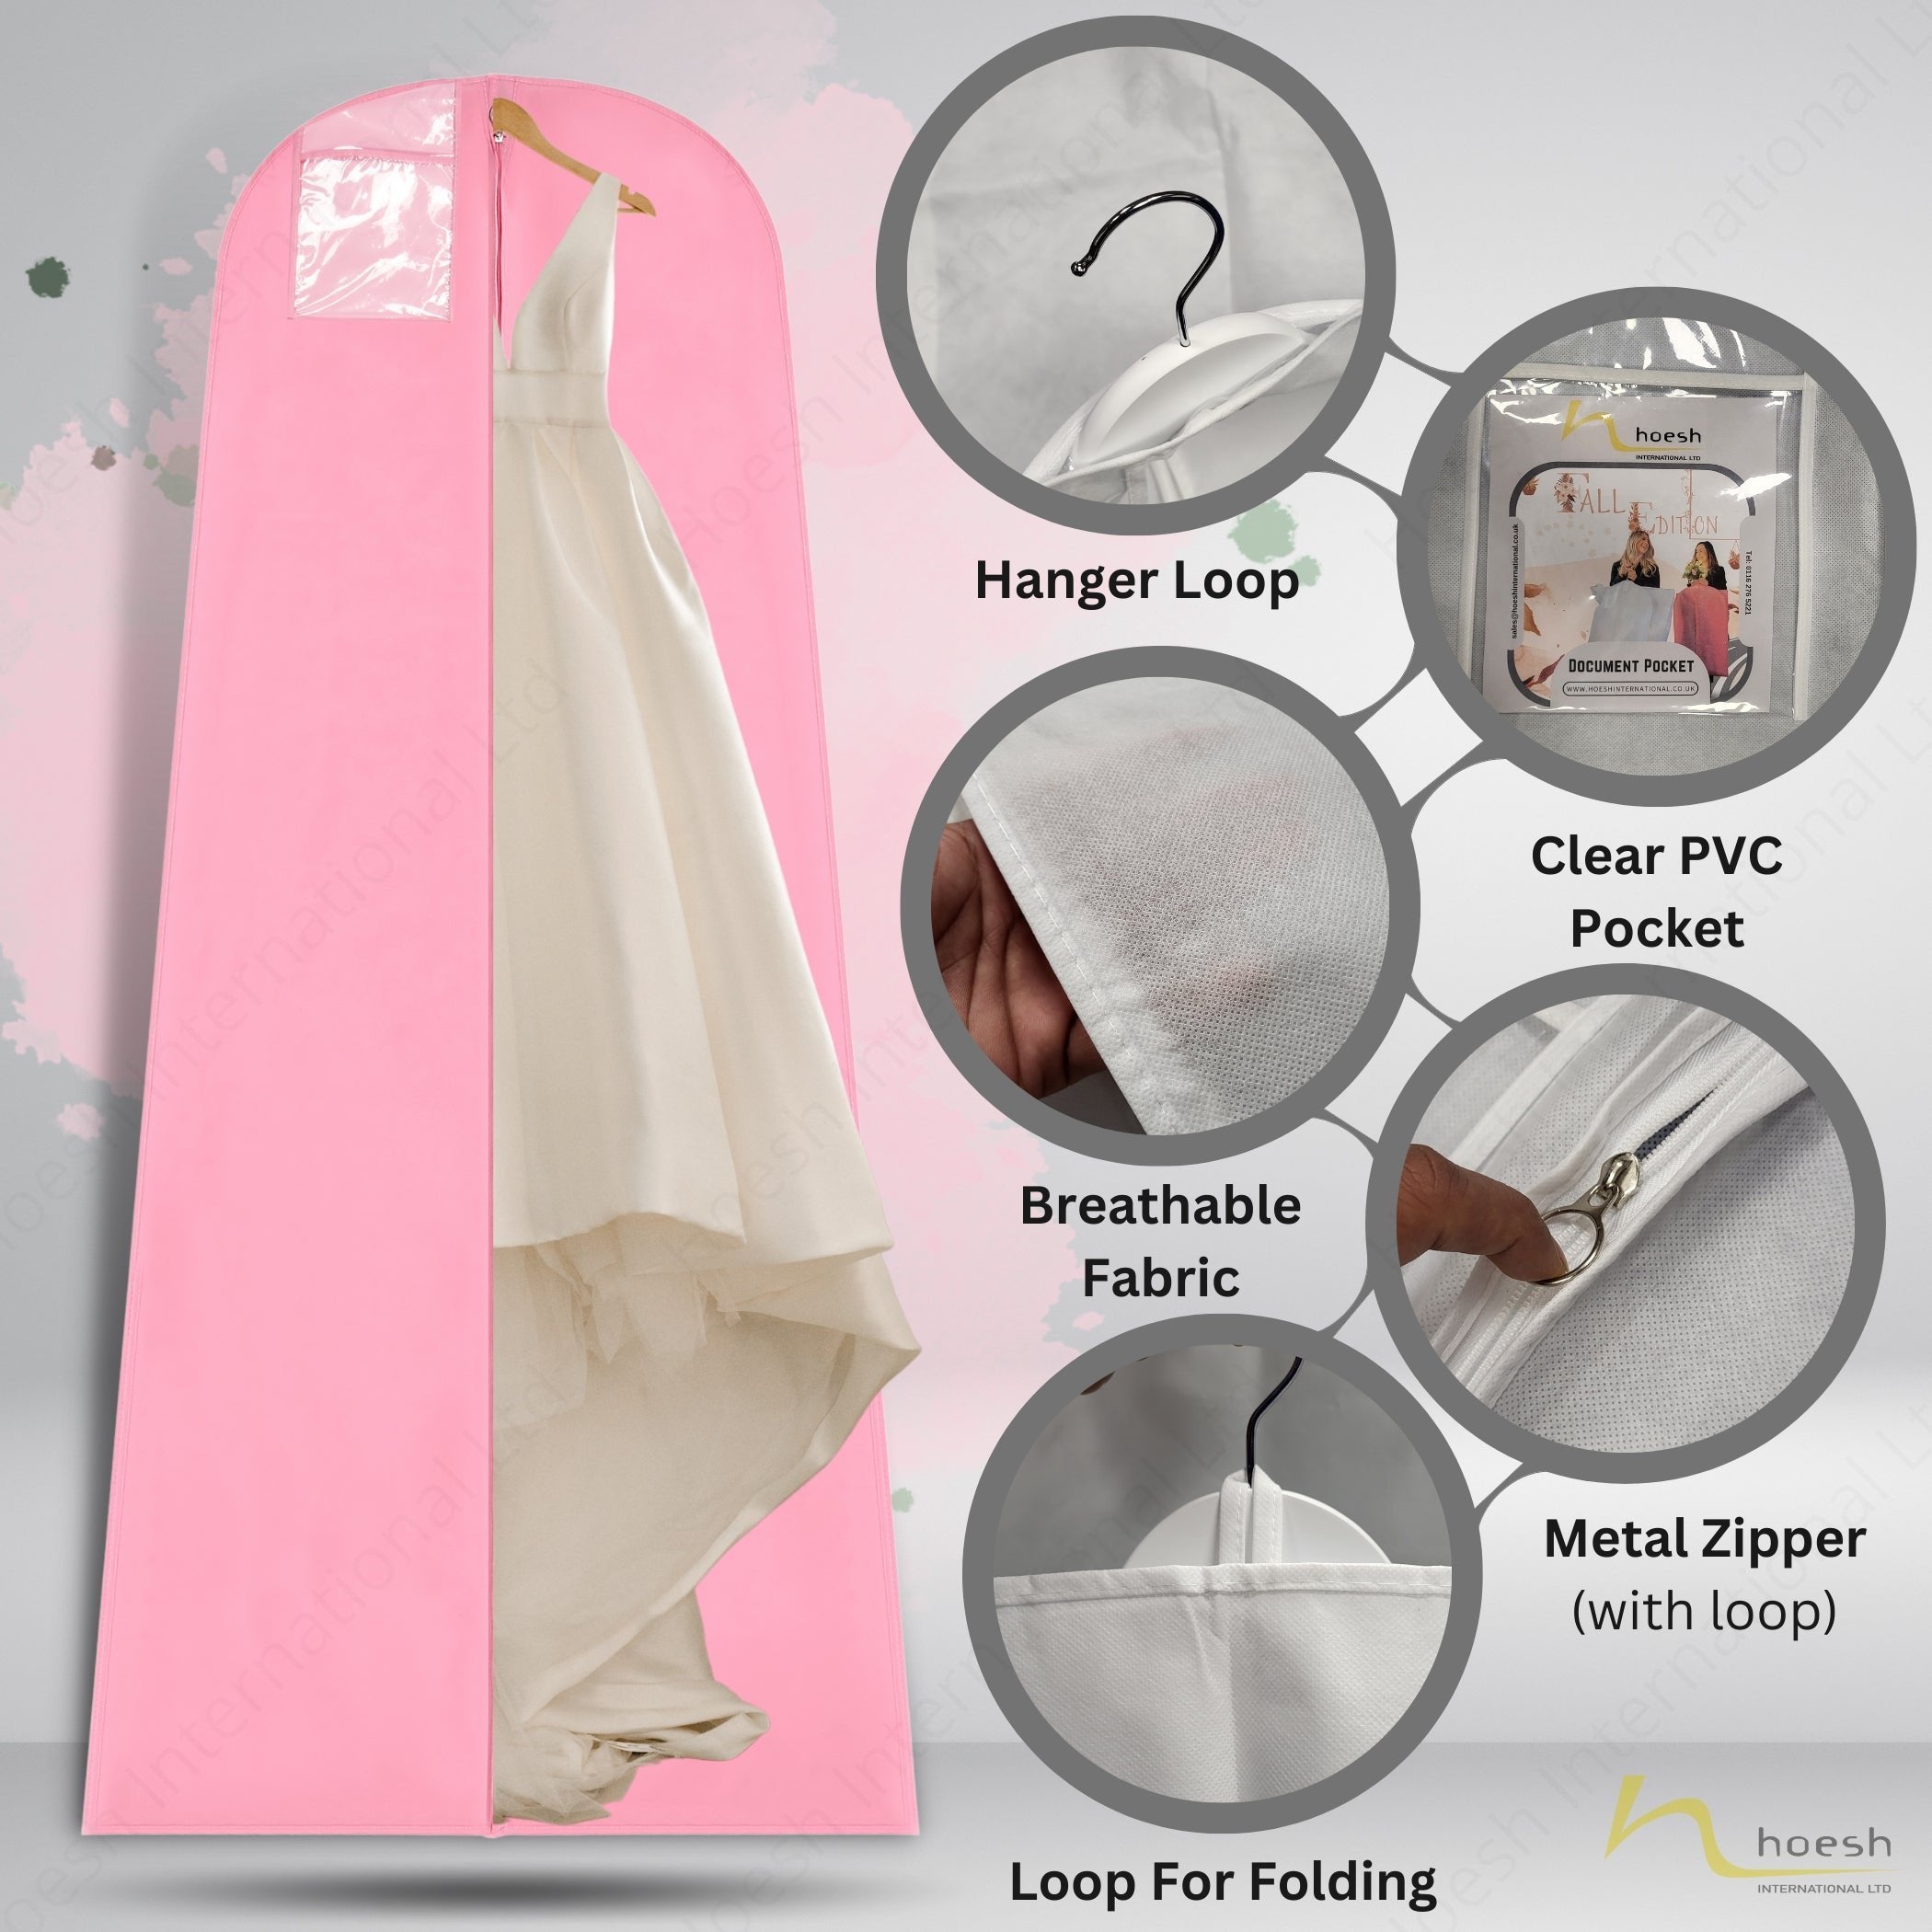 Wedding Dress Cover, 10” Full Gusset Breathable - Hoesh International Ltd